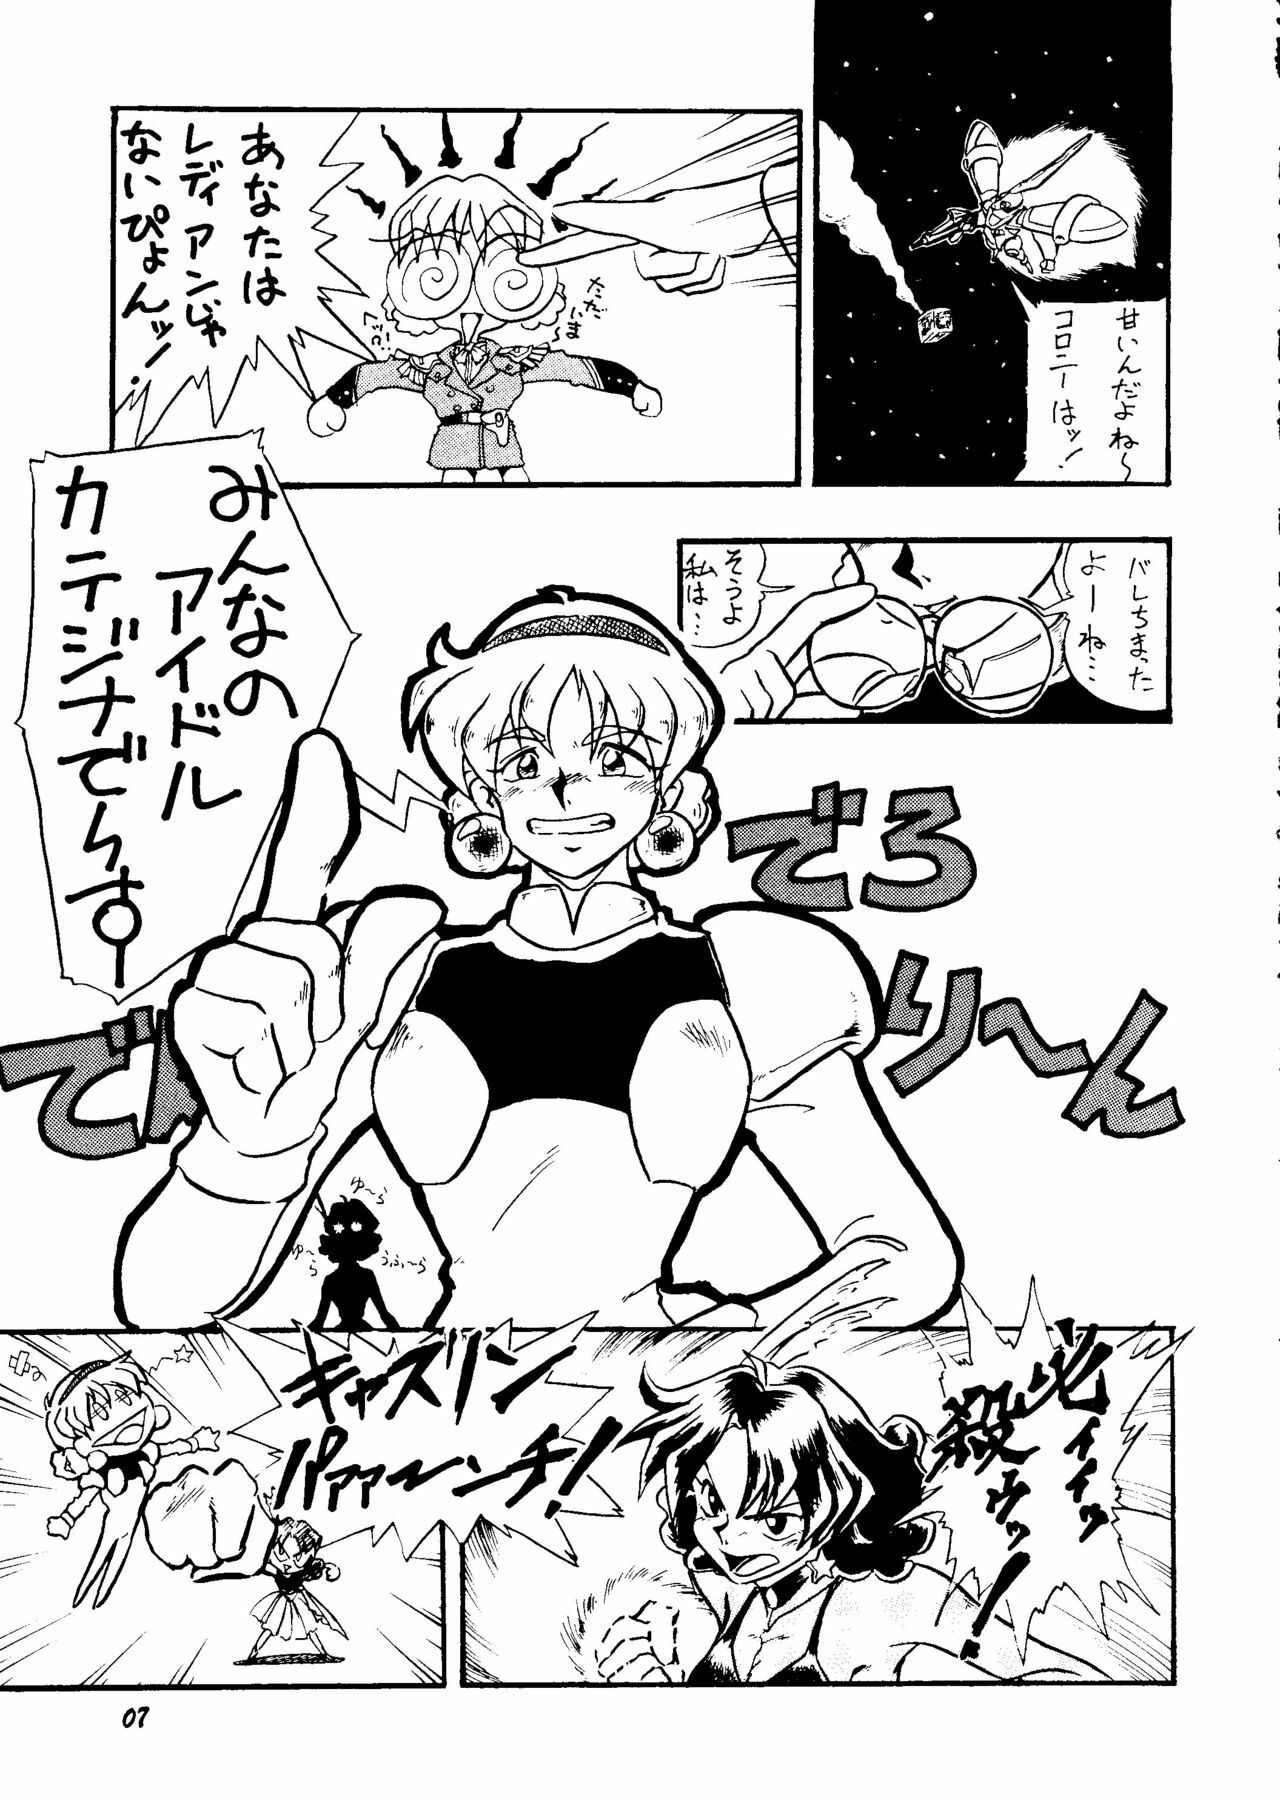 [Rupinasu Touzokudan & Cha Cha Cha Brothers] Shinu no wa Yatsura da (Gundam Wing) page 6 full